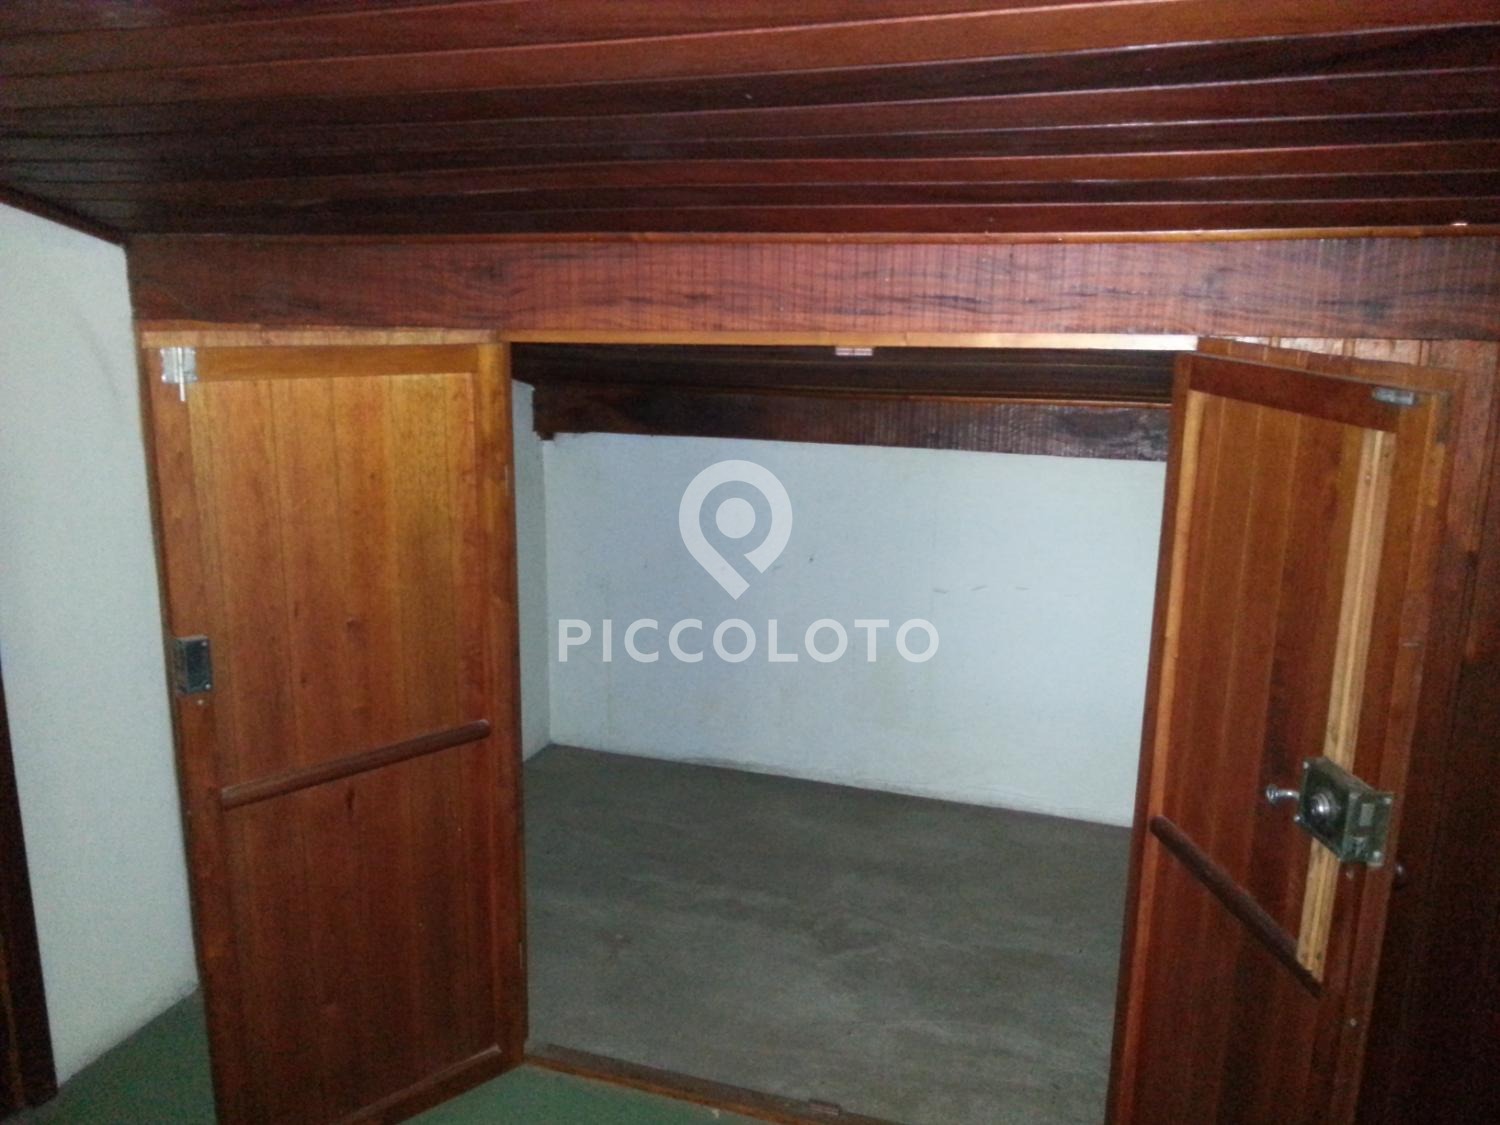 Piccoloto -Casa à venda no Barão Geraldo em Campinas